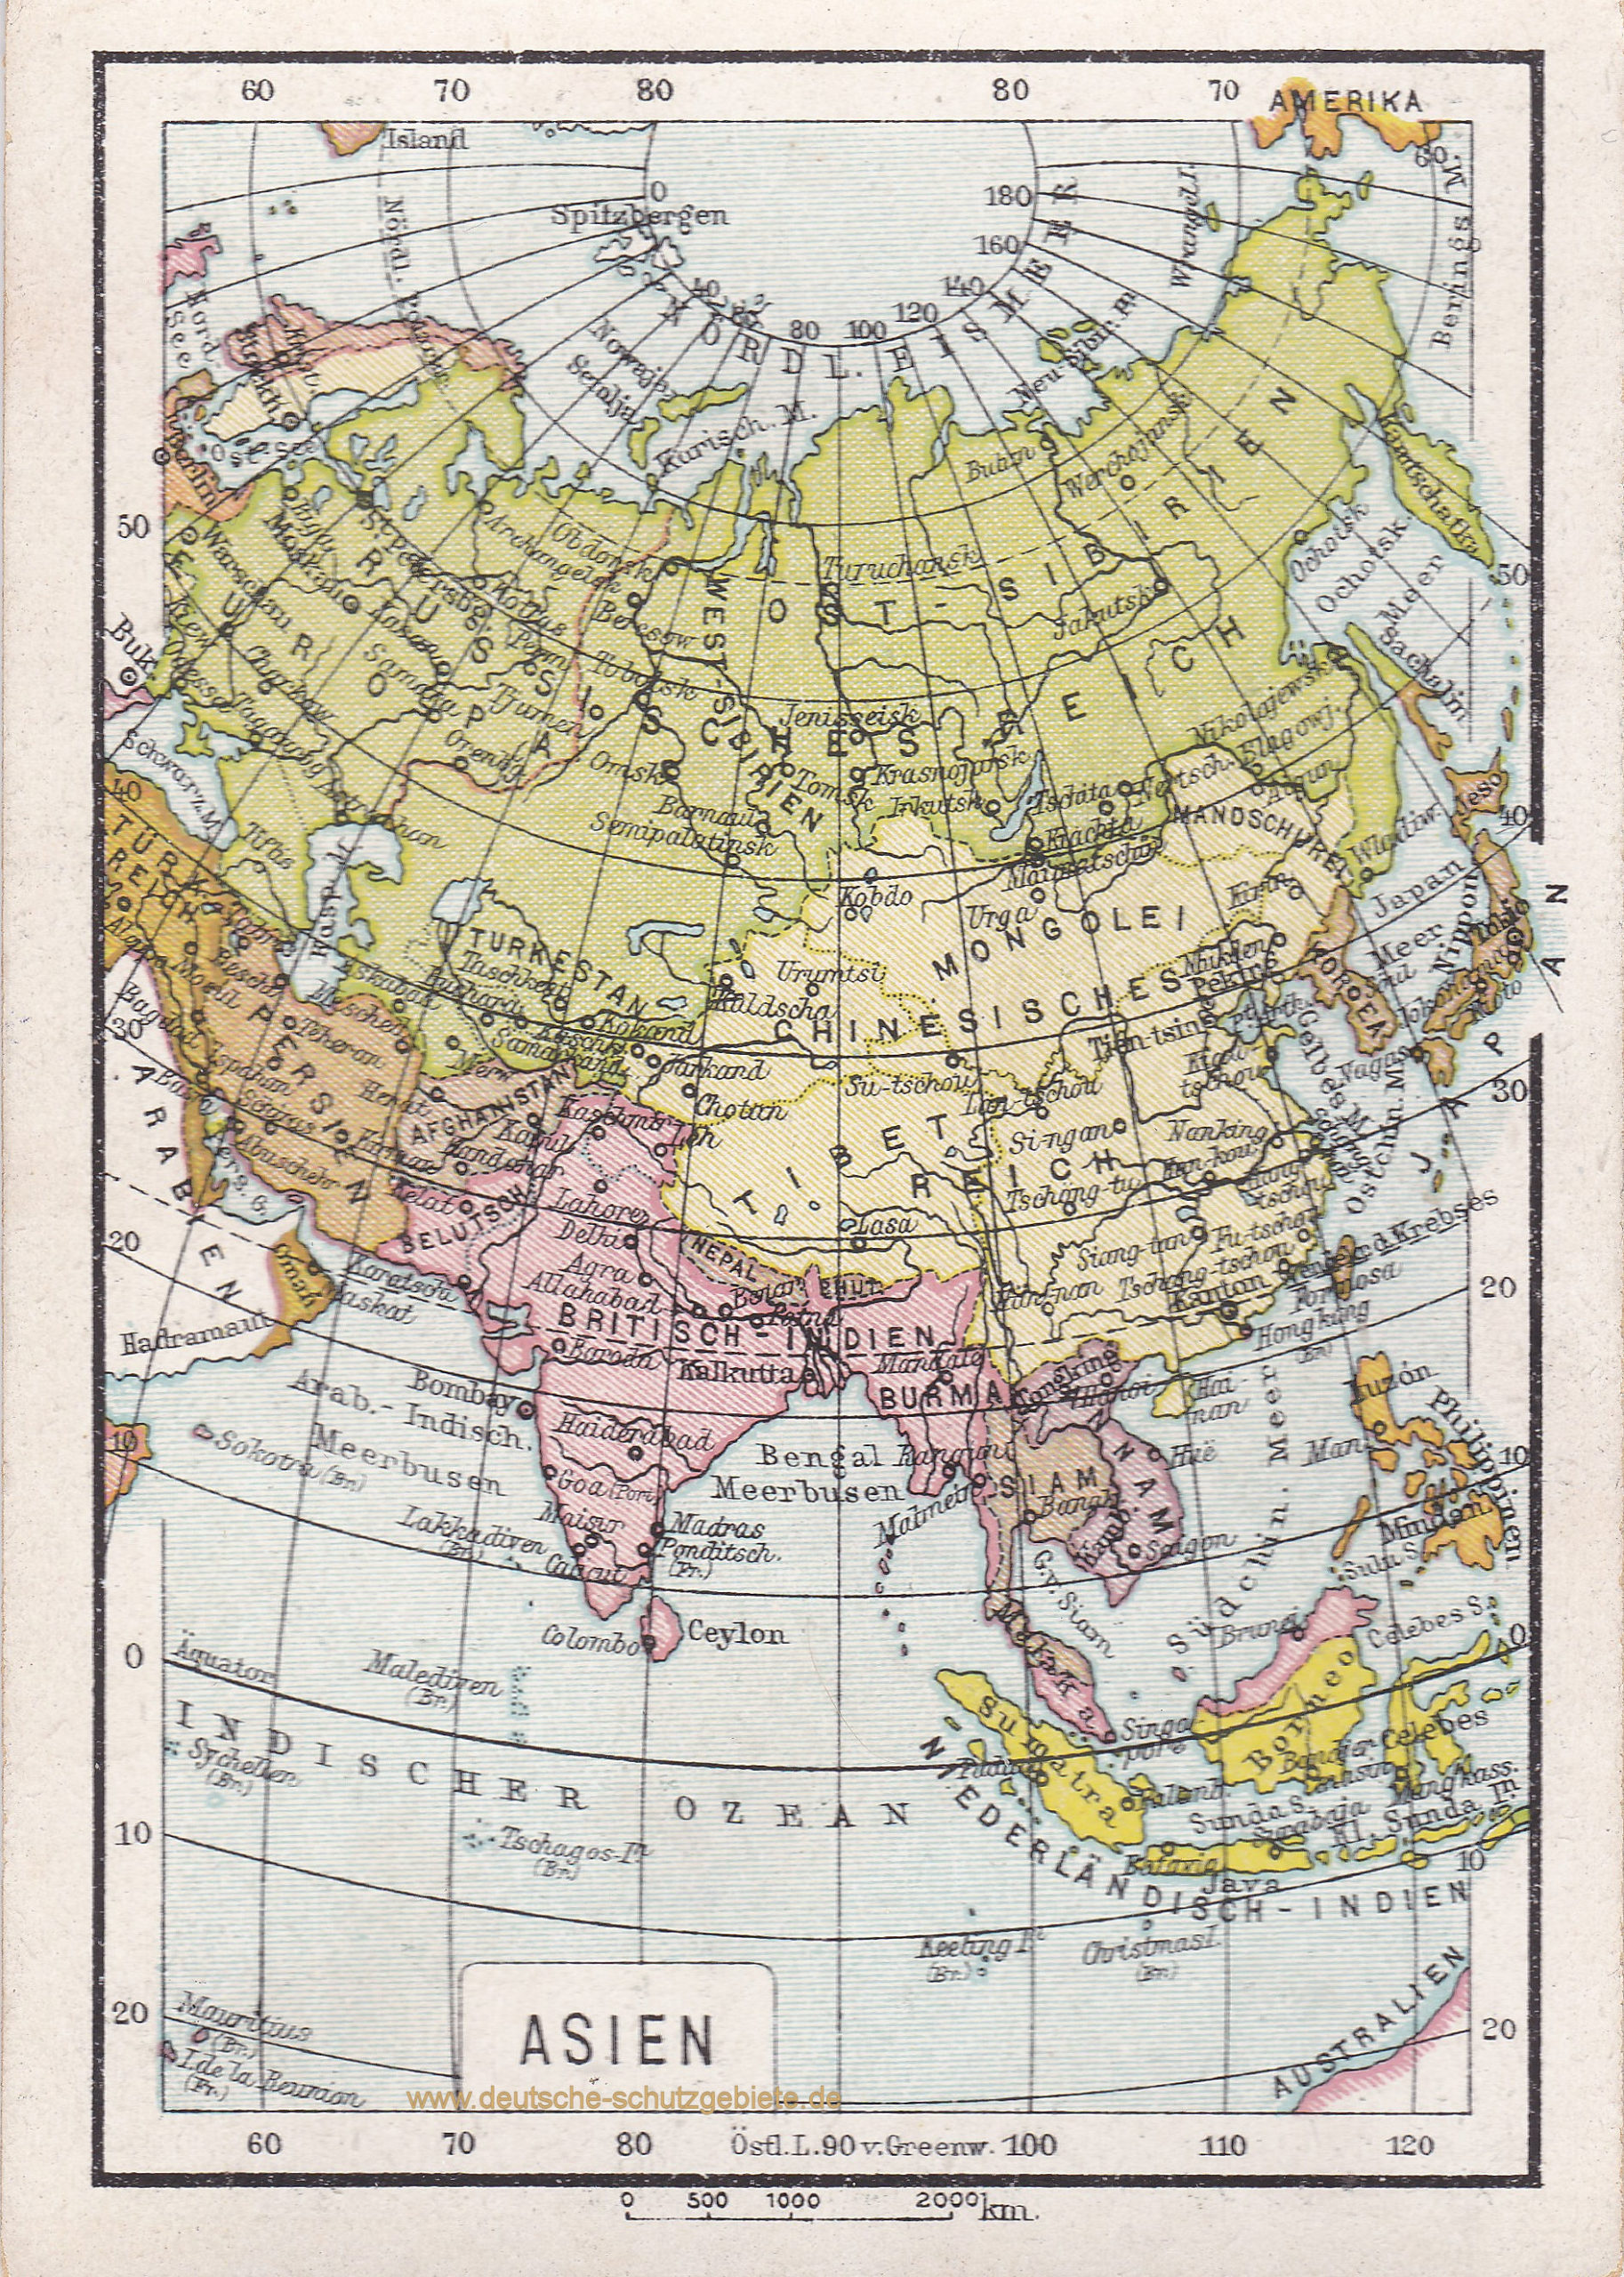 Asien (1912)